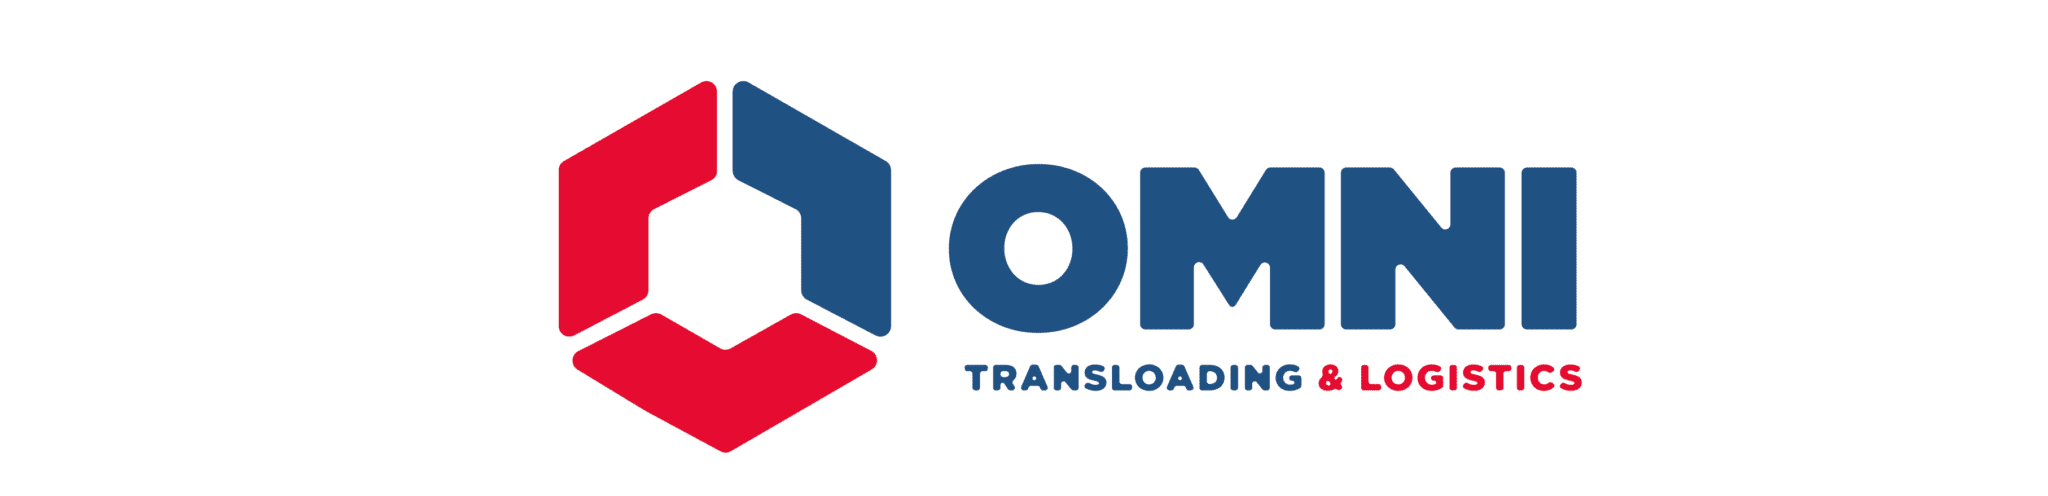 Omni_Base logos pagina web_Mesa de trabajo 1